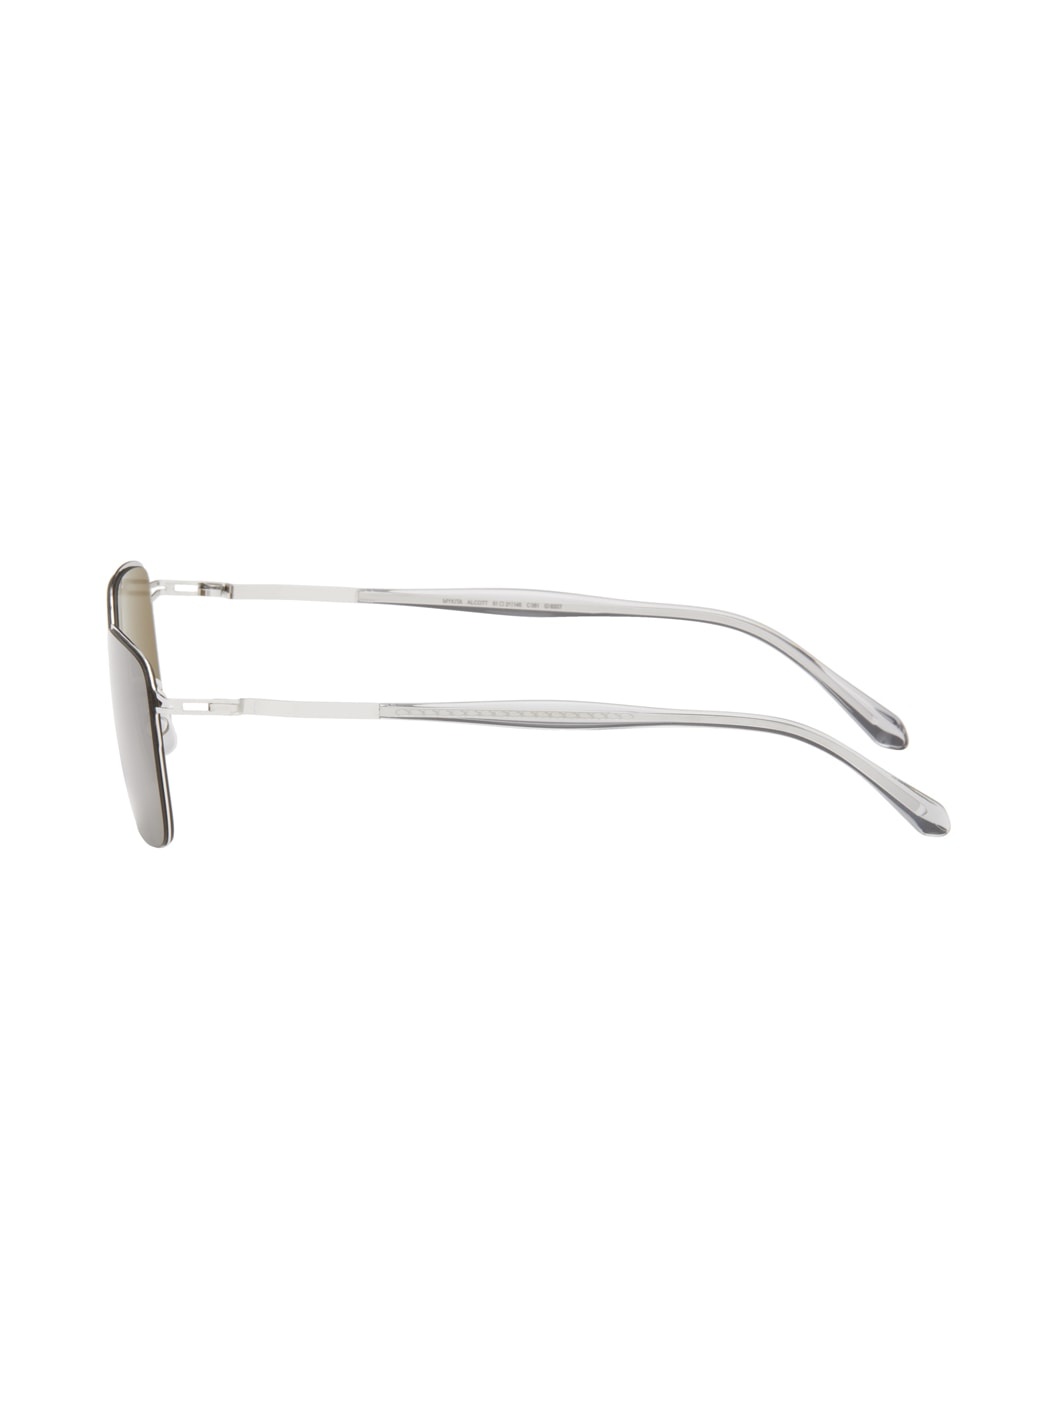 Silver Alcott Sunglasses - 3